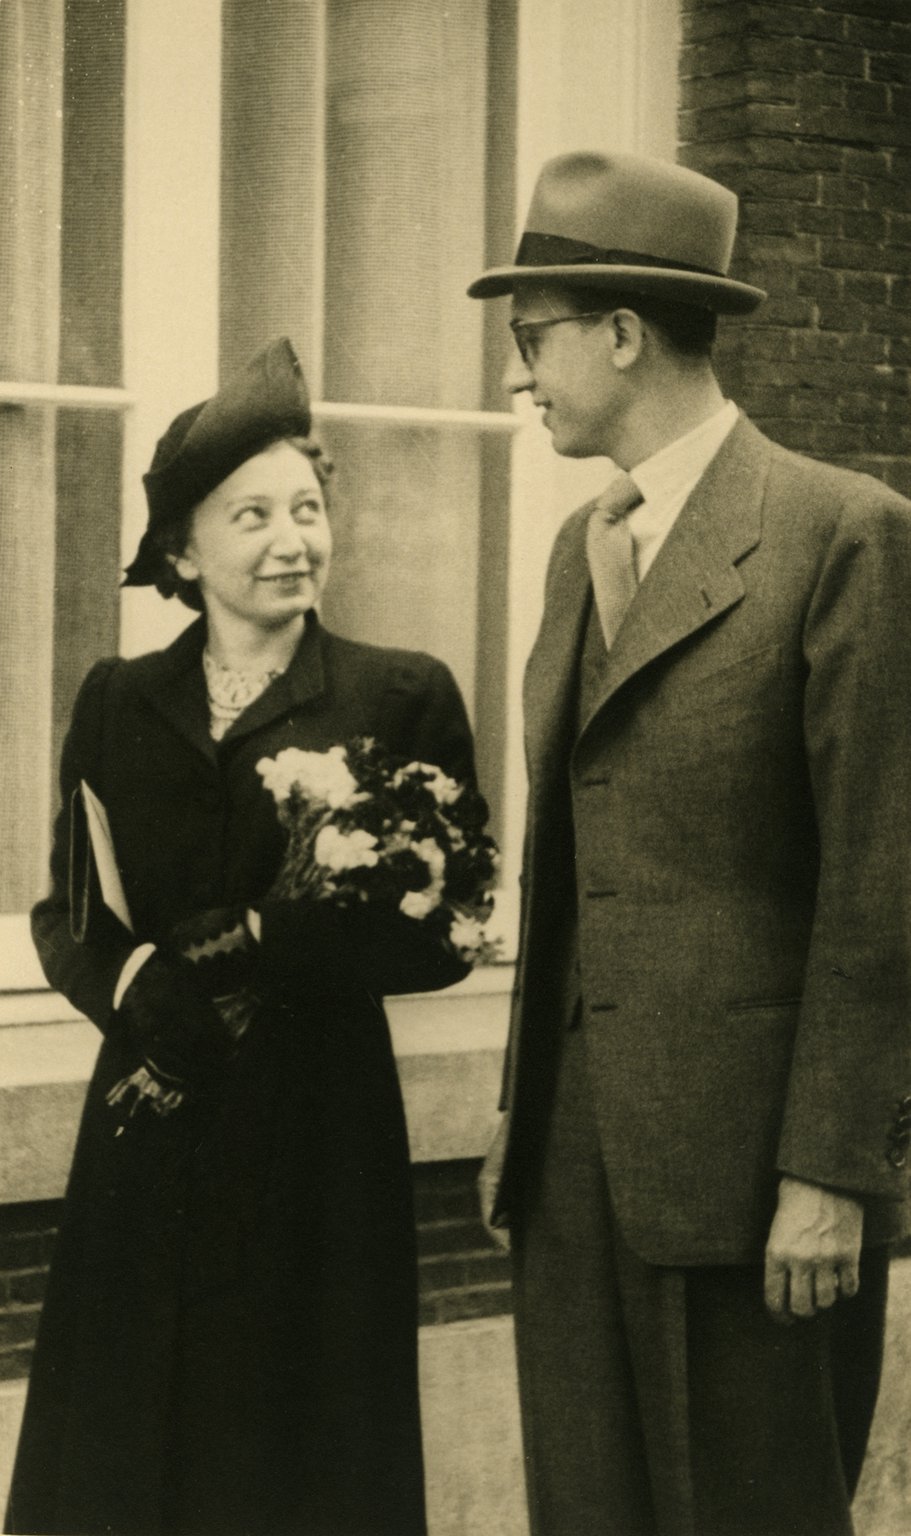 La boda de Miep y Jan Gies, 16 de julio de 1941.